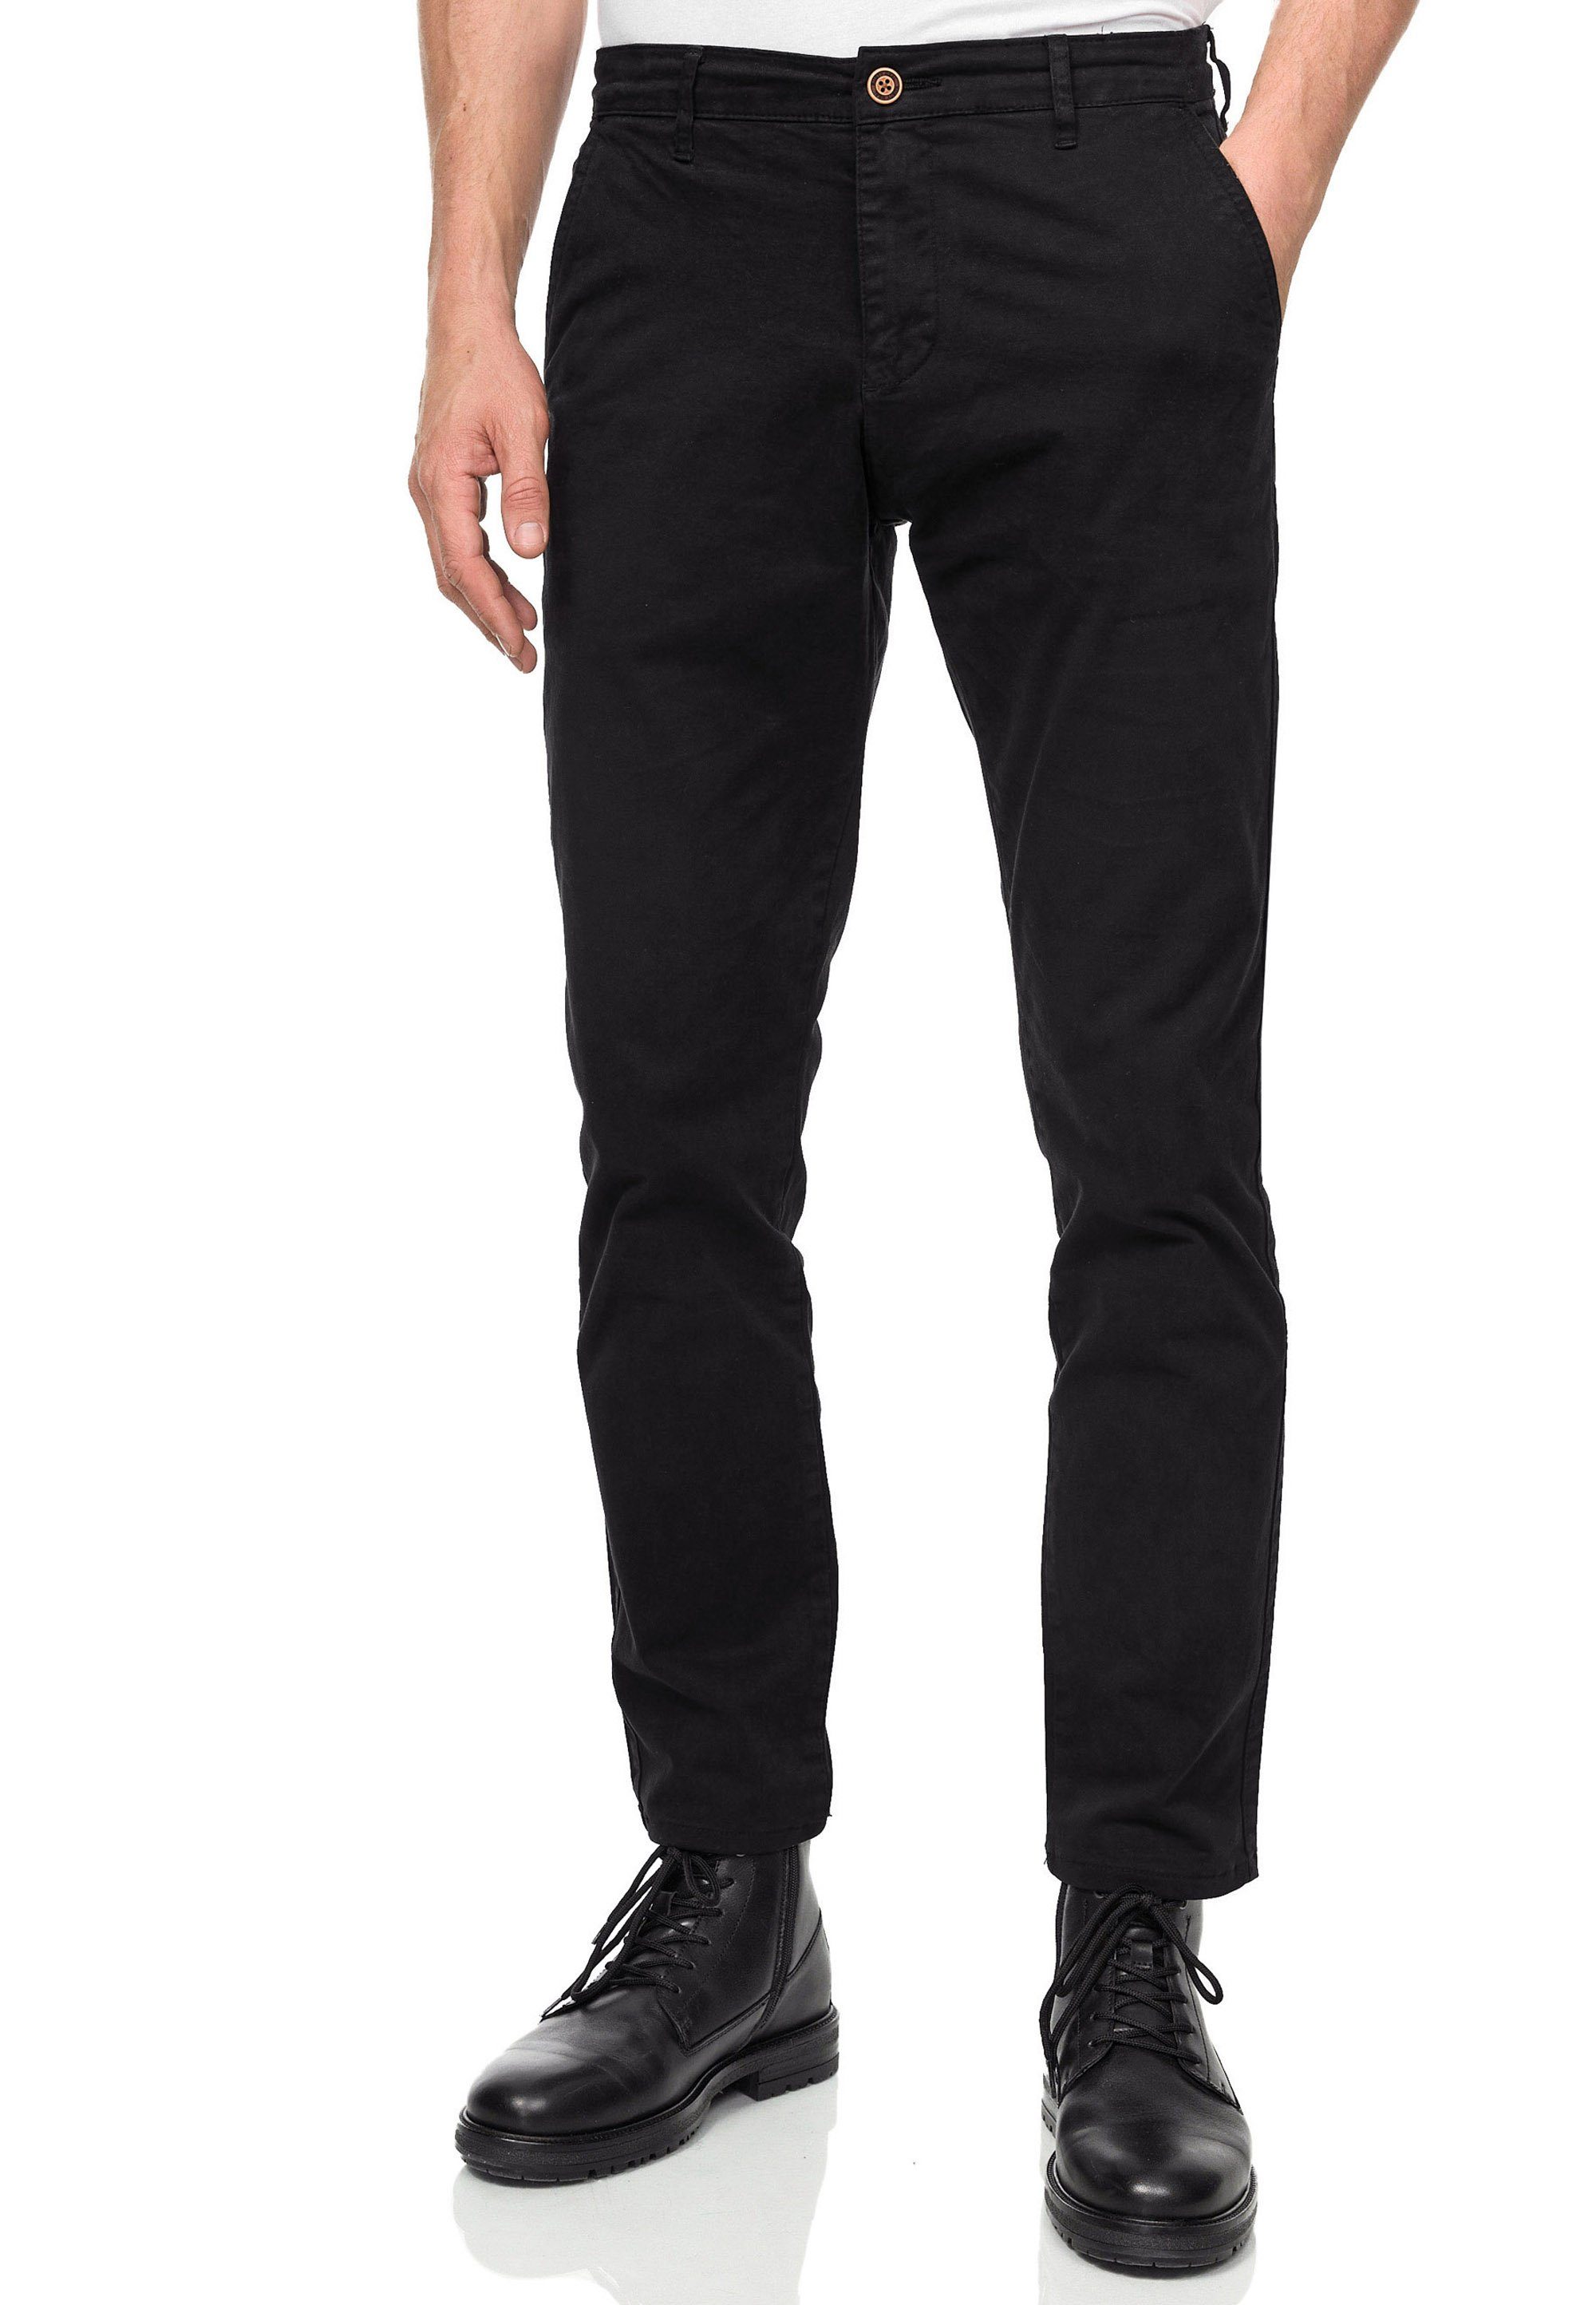 Rusty Neal Straight-Jeans SETO Fit-Schnitt schwarz Straight bequemen im